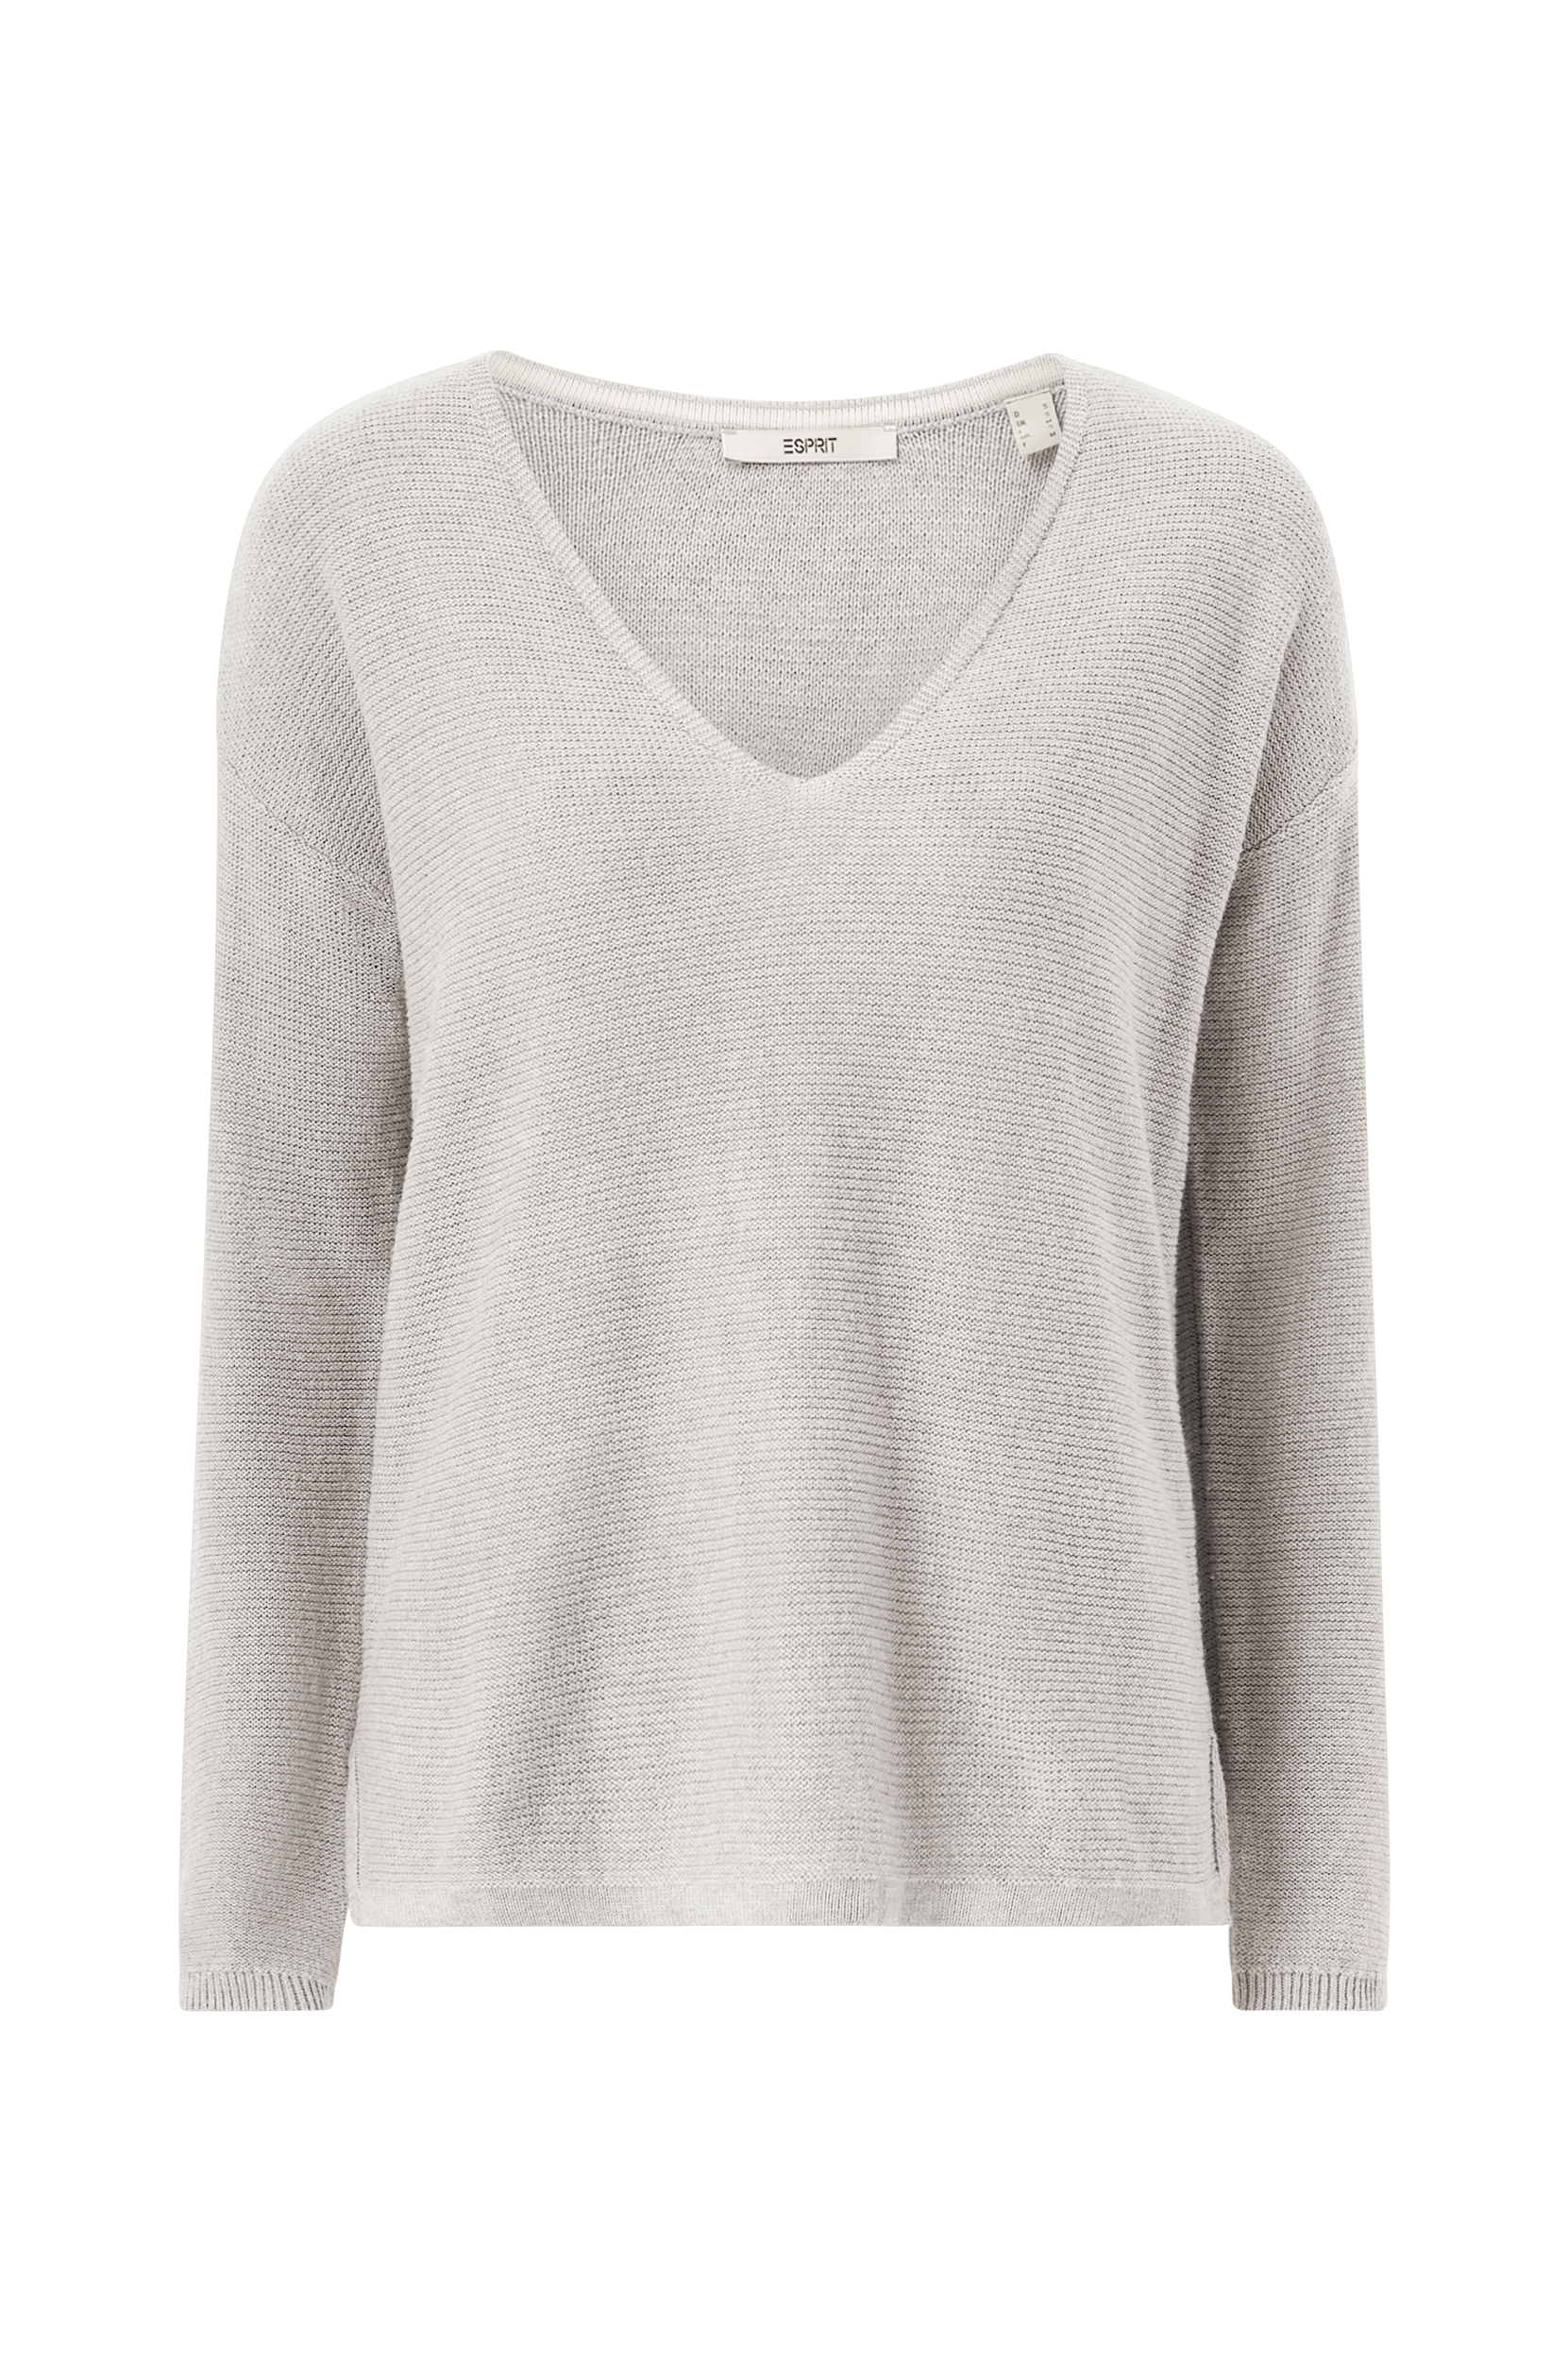 Esprit - Trøje Sweater - - 38 - Strik - Tøj til kvinder (29921796)